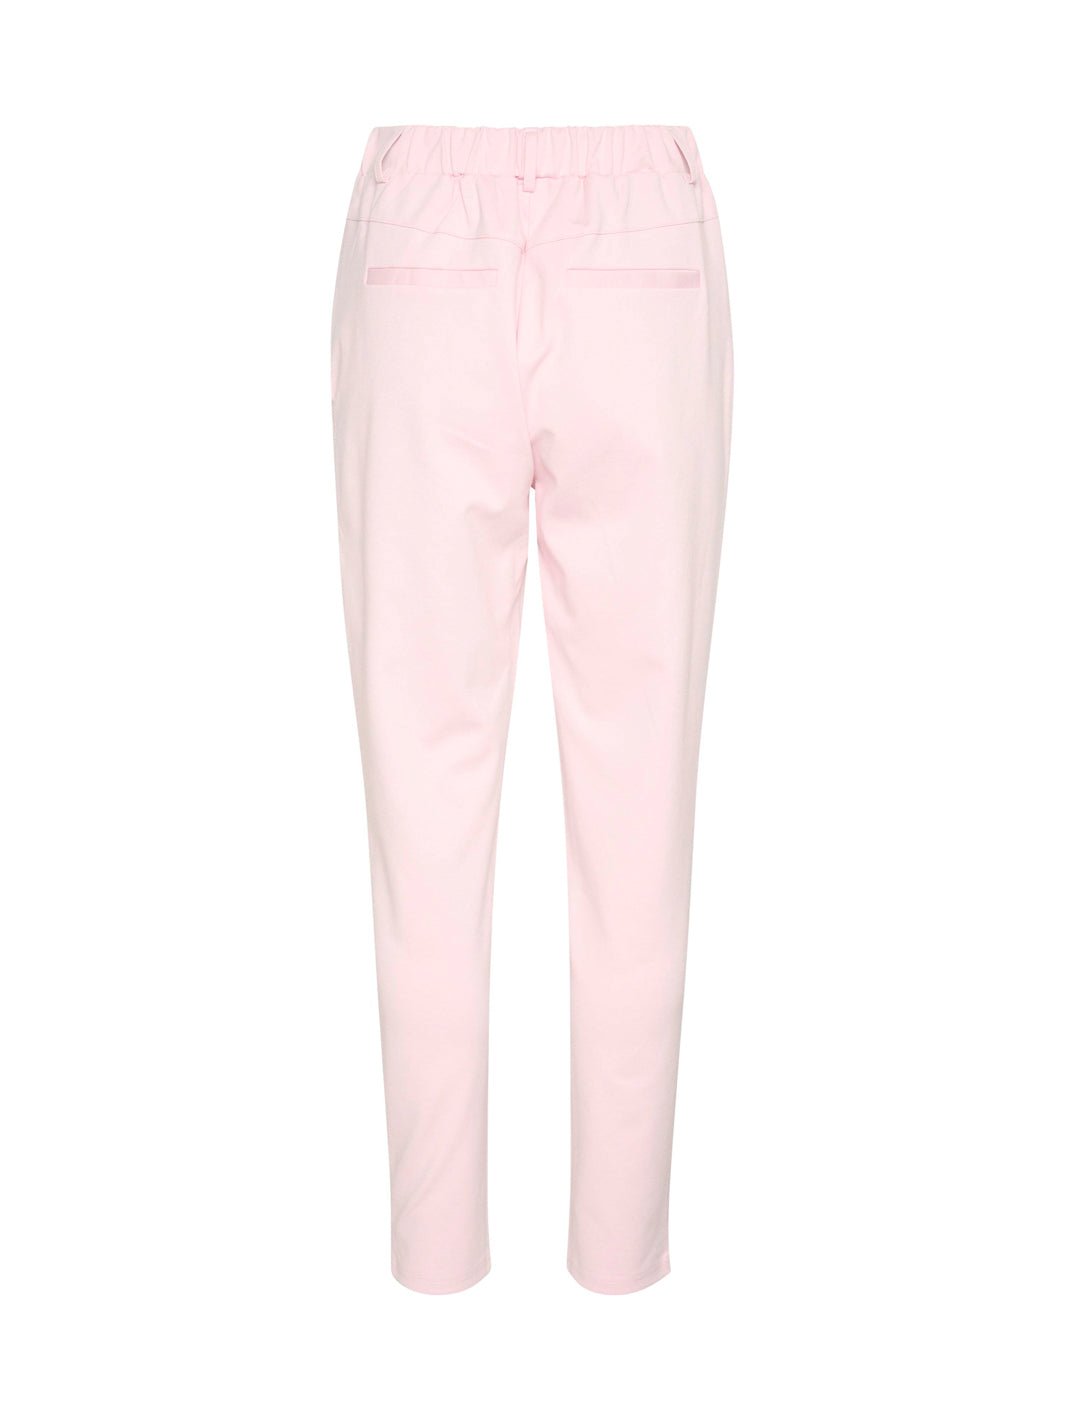 Kaffe KAjenny pants pink mist - Online-Mode